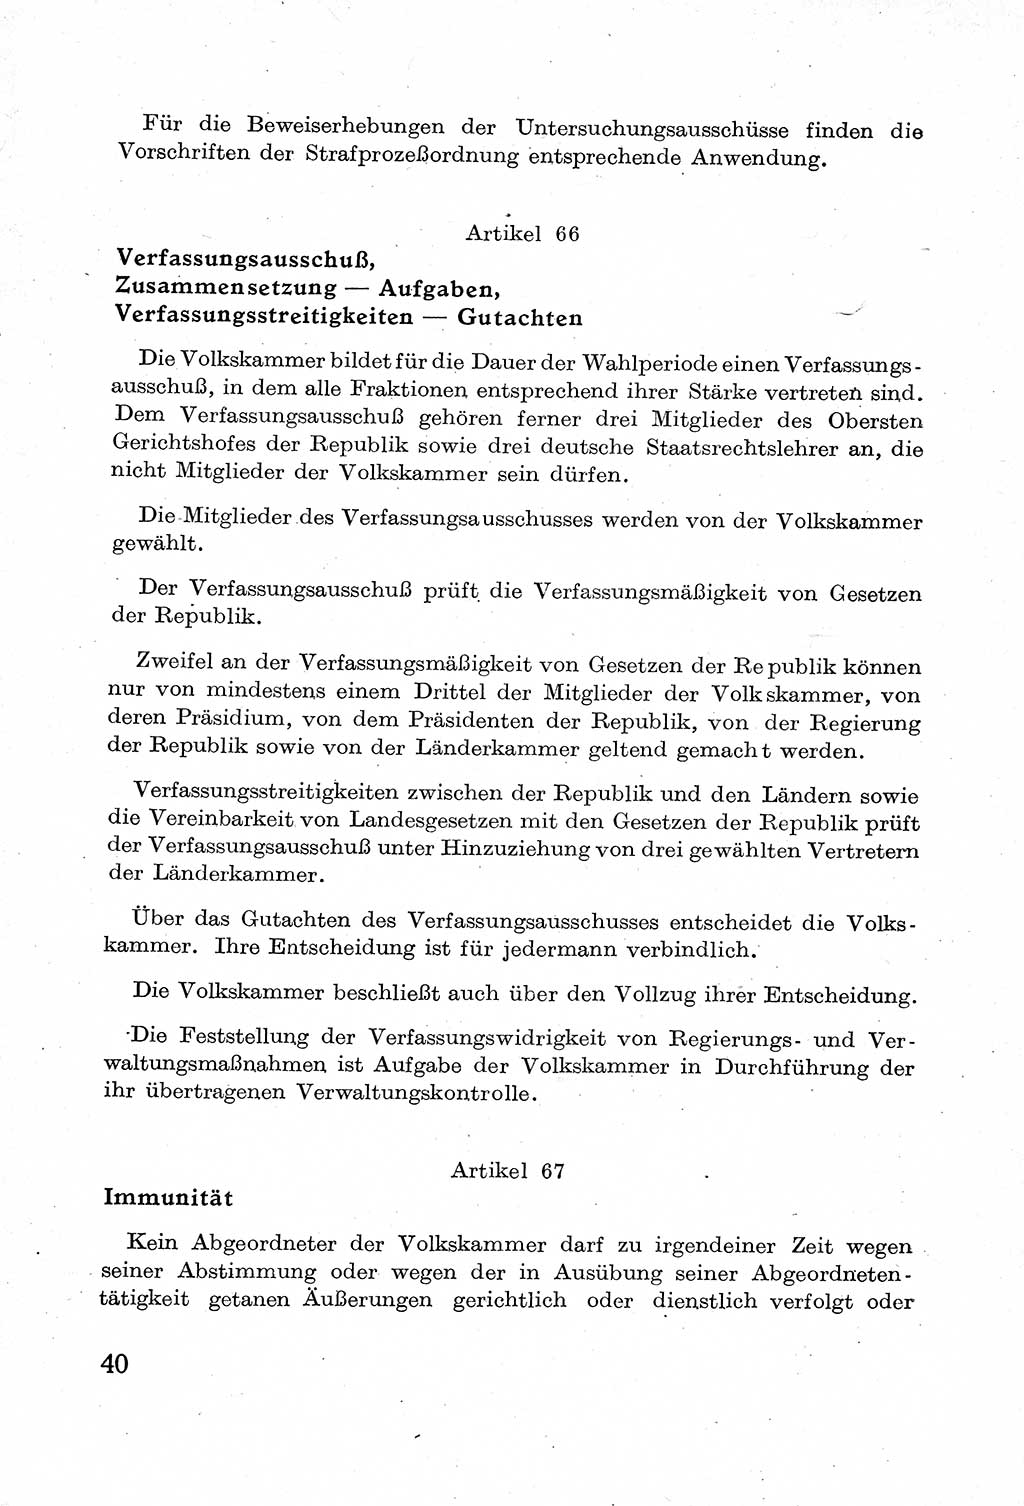 Verfassung der Deutschen Demokratischen Republik (DDR) mit einer Einleitung von Karl Steinhoff 1949, Seite 40 (Verf. DDR Einl. K. S. 1949, S. 40)